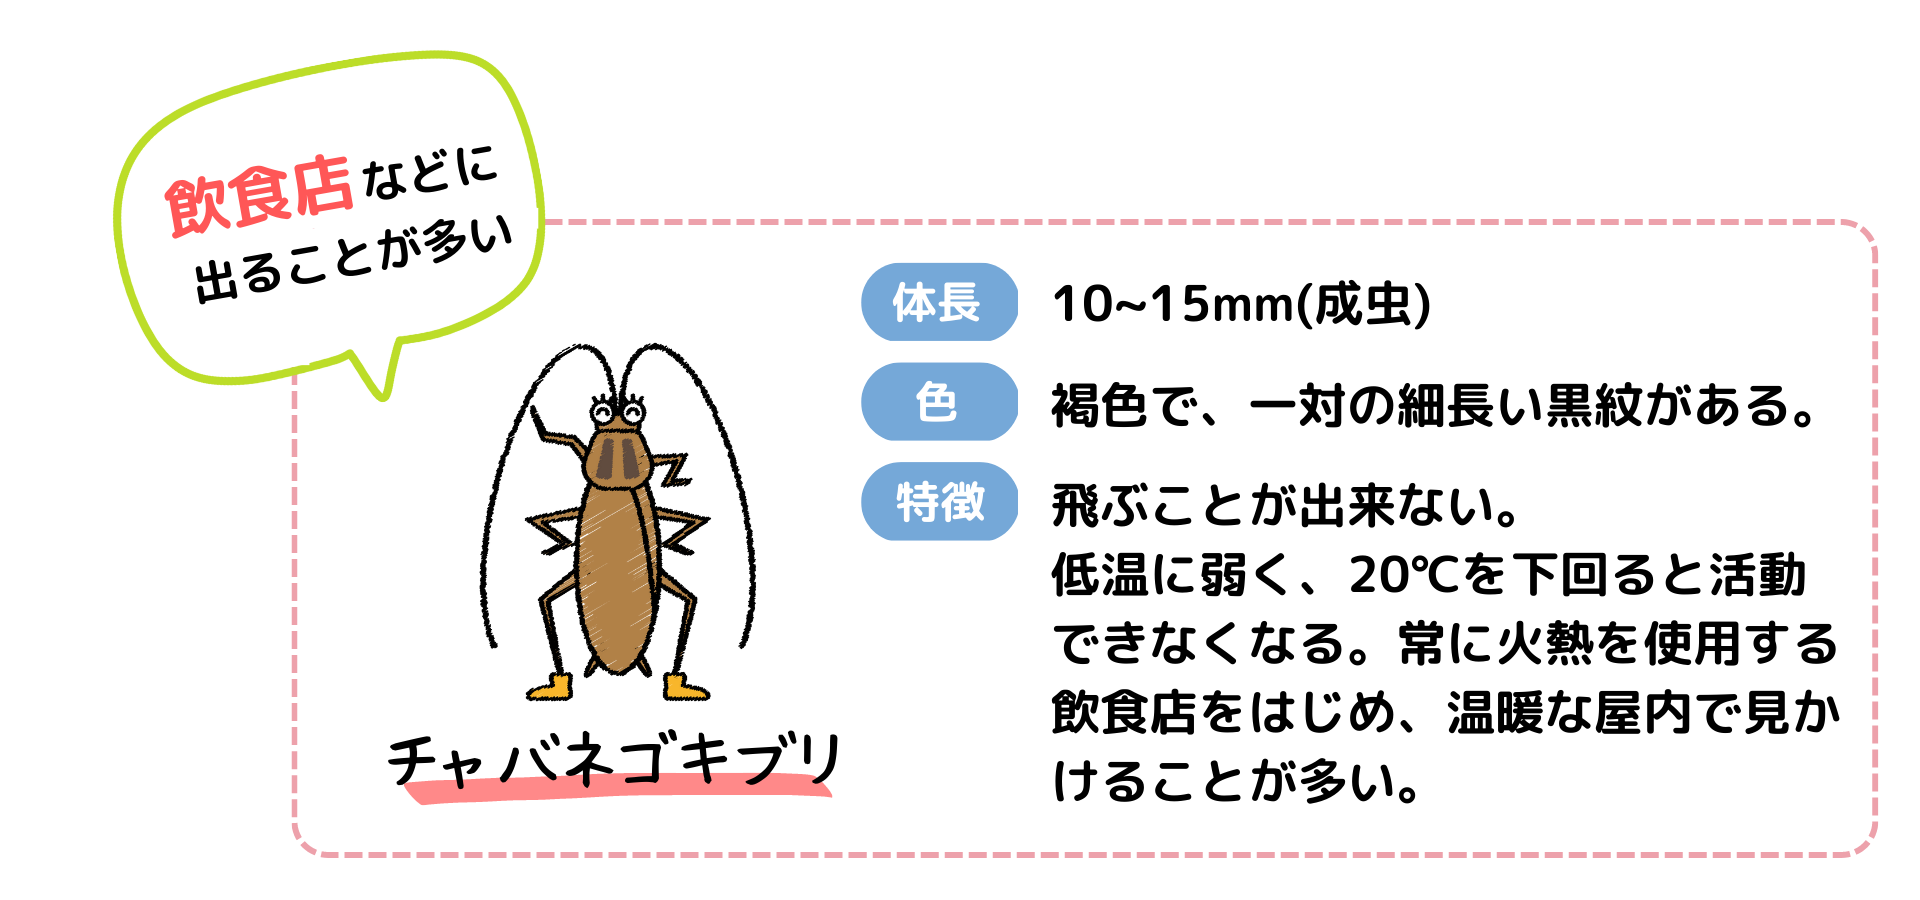 チャバネゴキブリの特徴